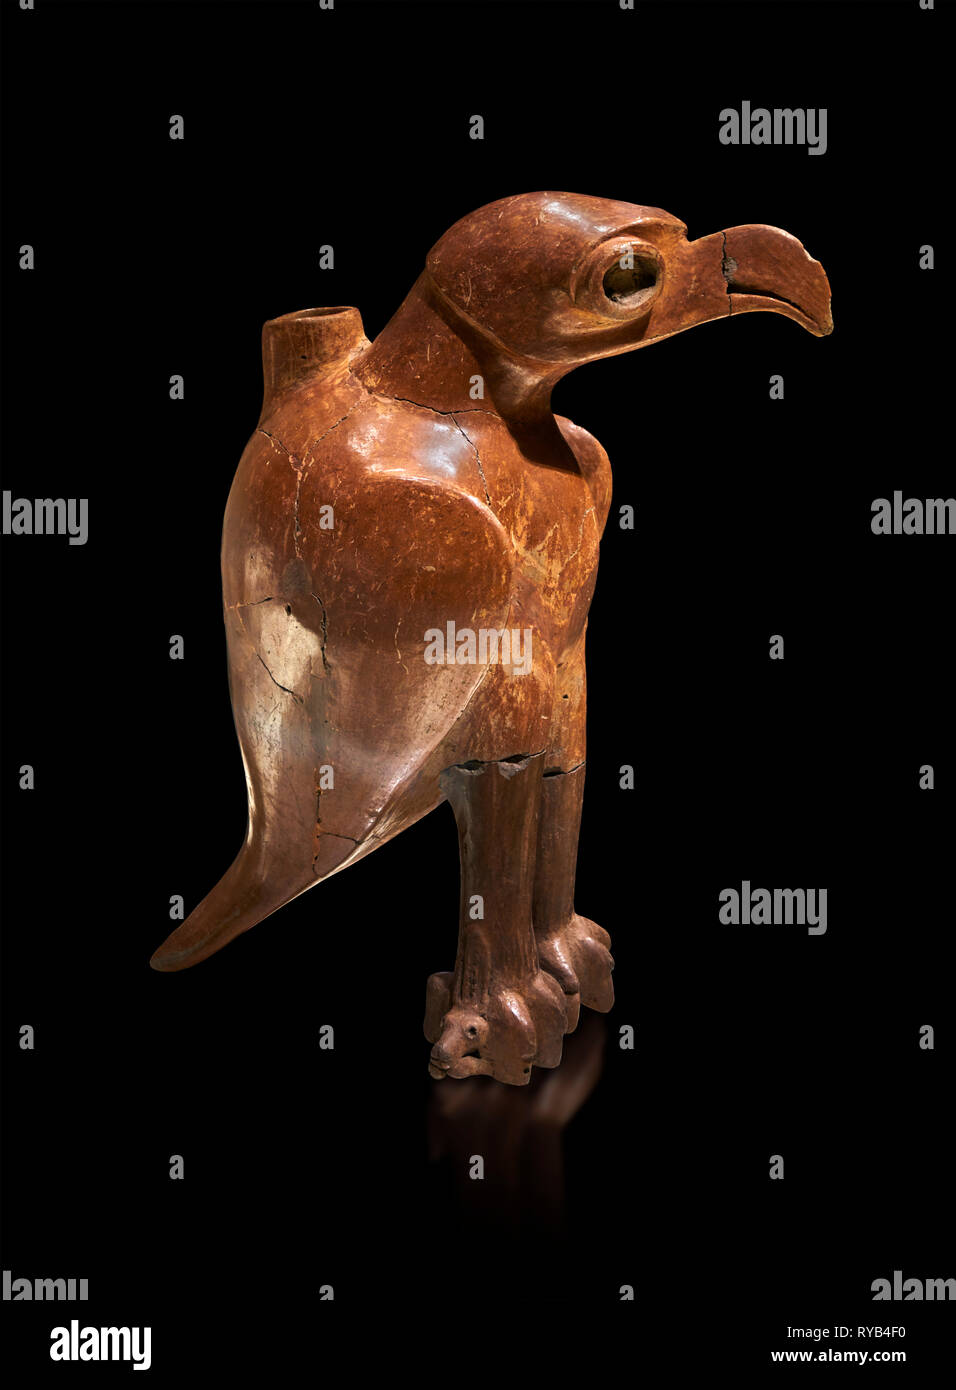 L'âge de bronze en forme de navire Anatolian eagle rituel - 19e au 17e siècle avant J.-C. - Kültepe Kanesh - Musée des civilisations anatoliennes, Ankara, Turquie. Encore une fois Banque D'Images